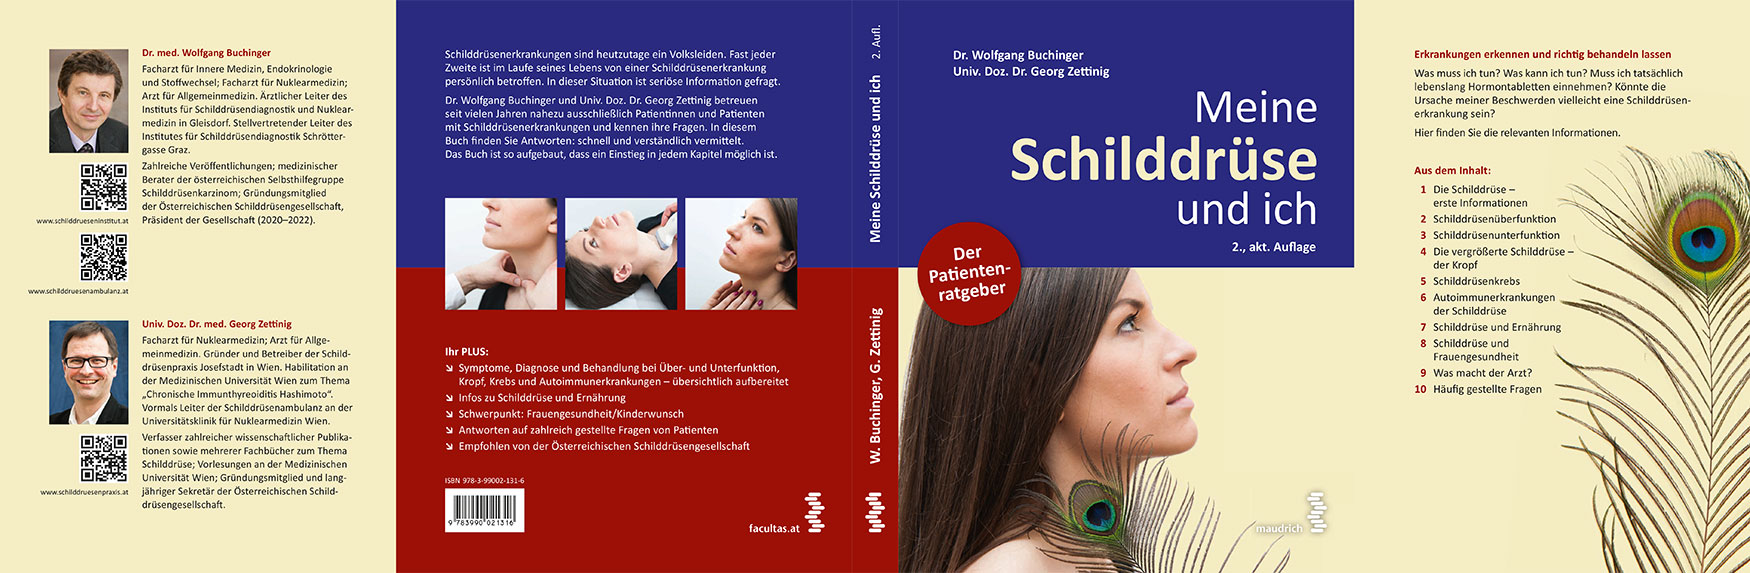 Der äußere und innere Umschlag des Patientenratgebers Meine Schilddrüse und ich - 2. Auflage 2021